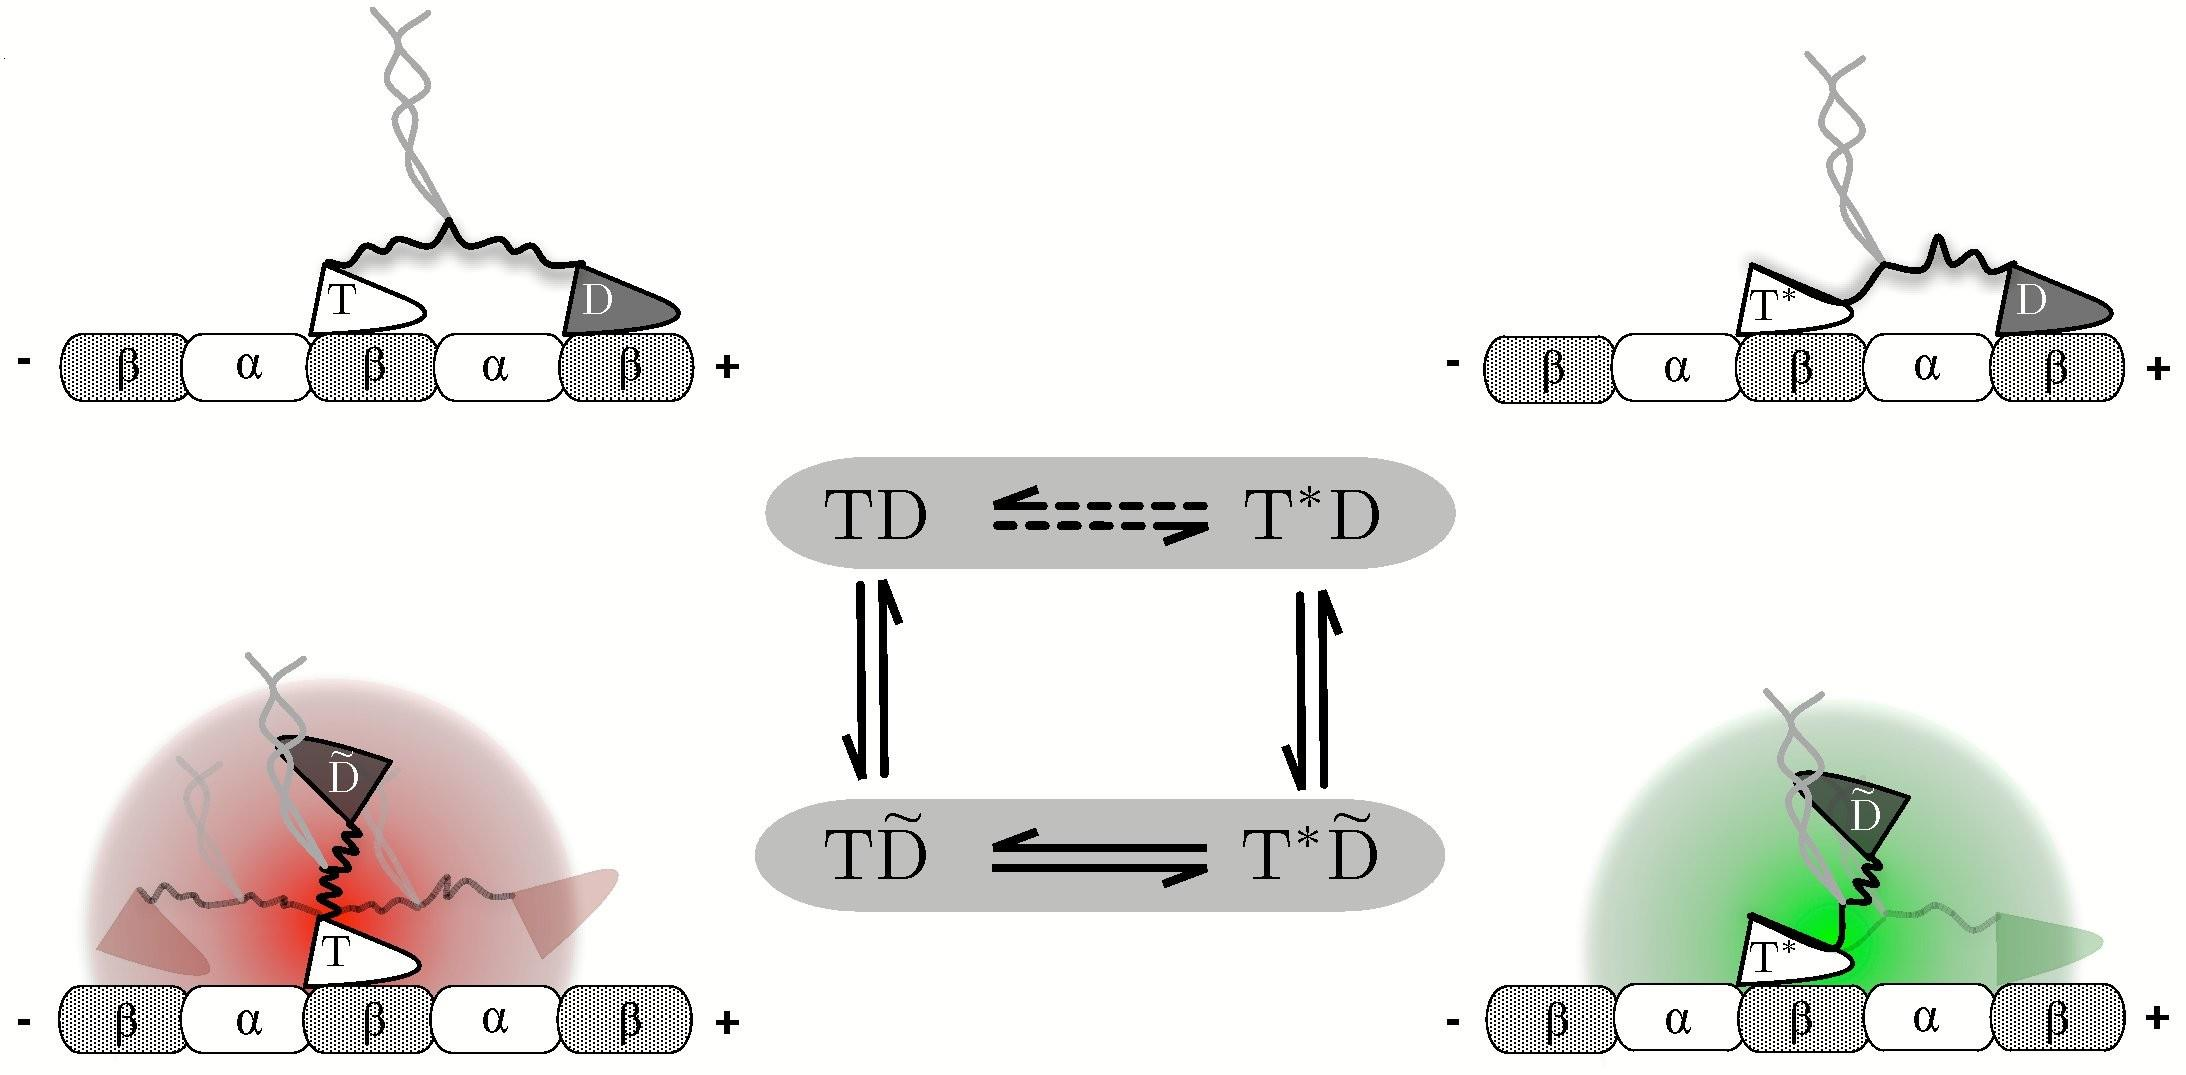 Kinezin modell A reakciókinetika és polimerdinamika együttes tárgyalásával megmutattuk, hogy a két fej koordinációjáért nem a necklinker által